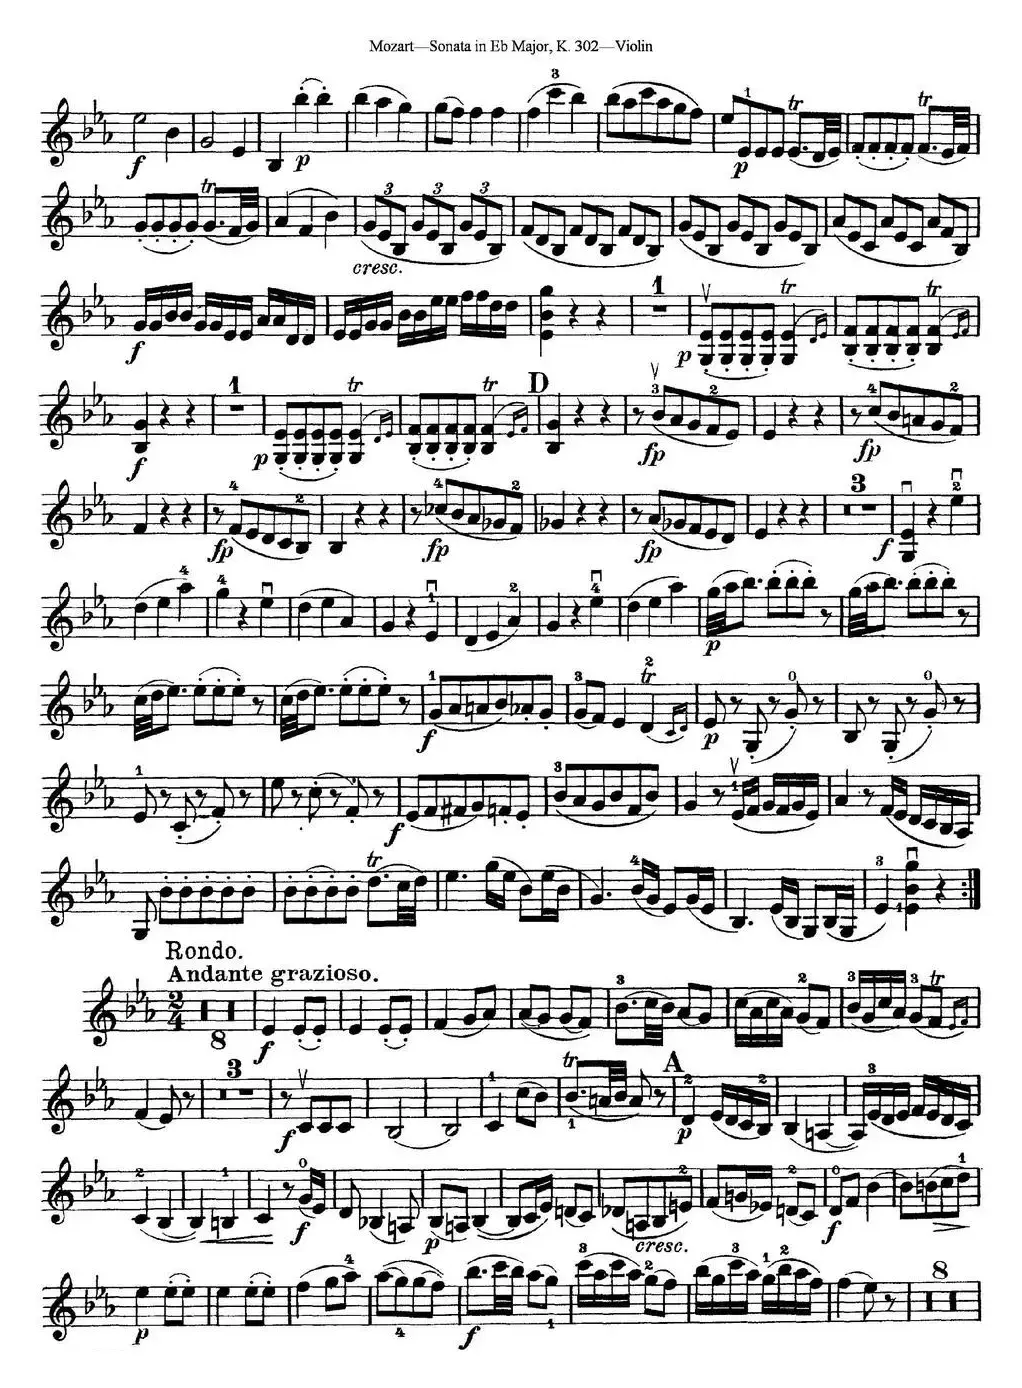 Violin Sonata in Eb Major K.302